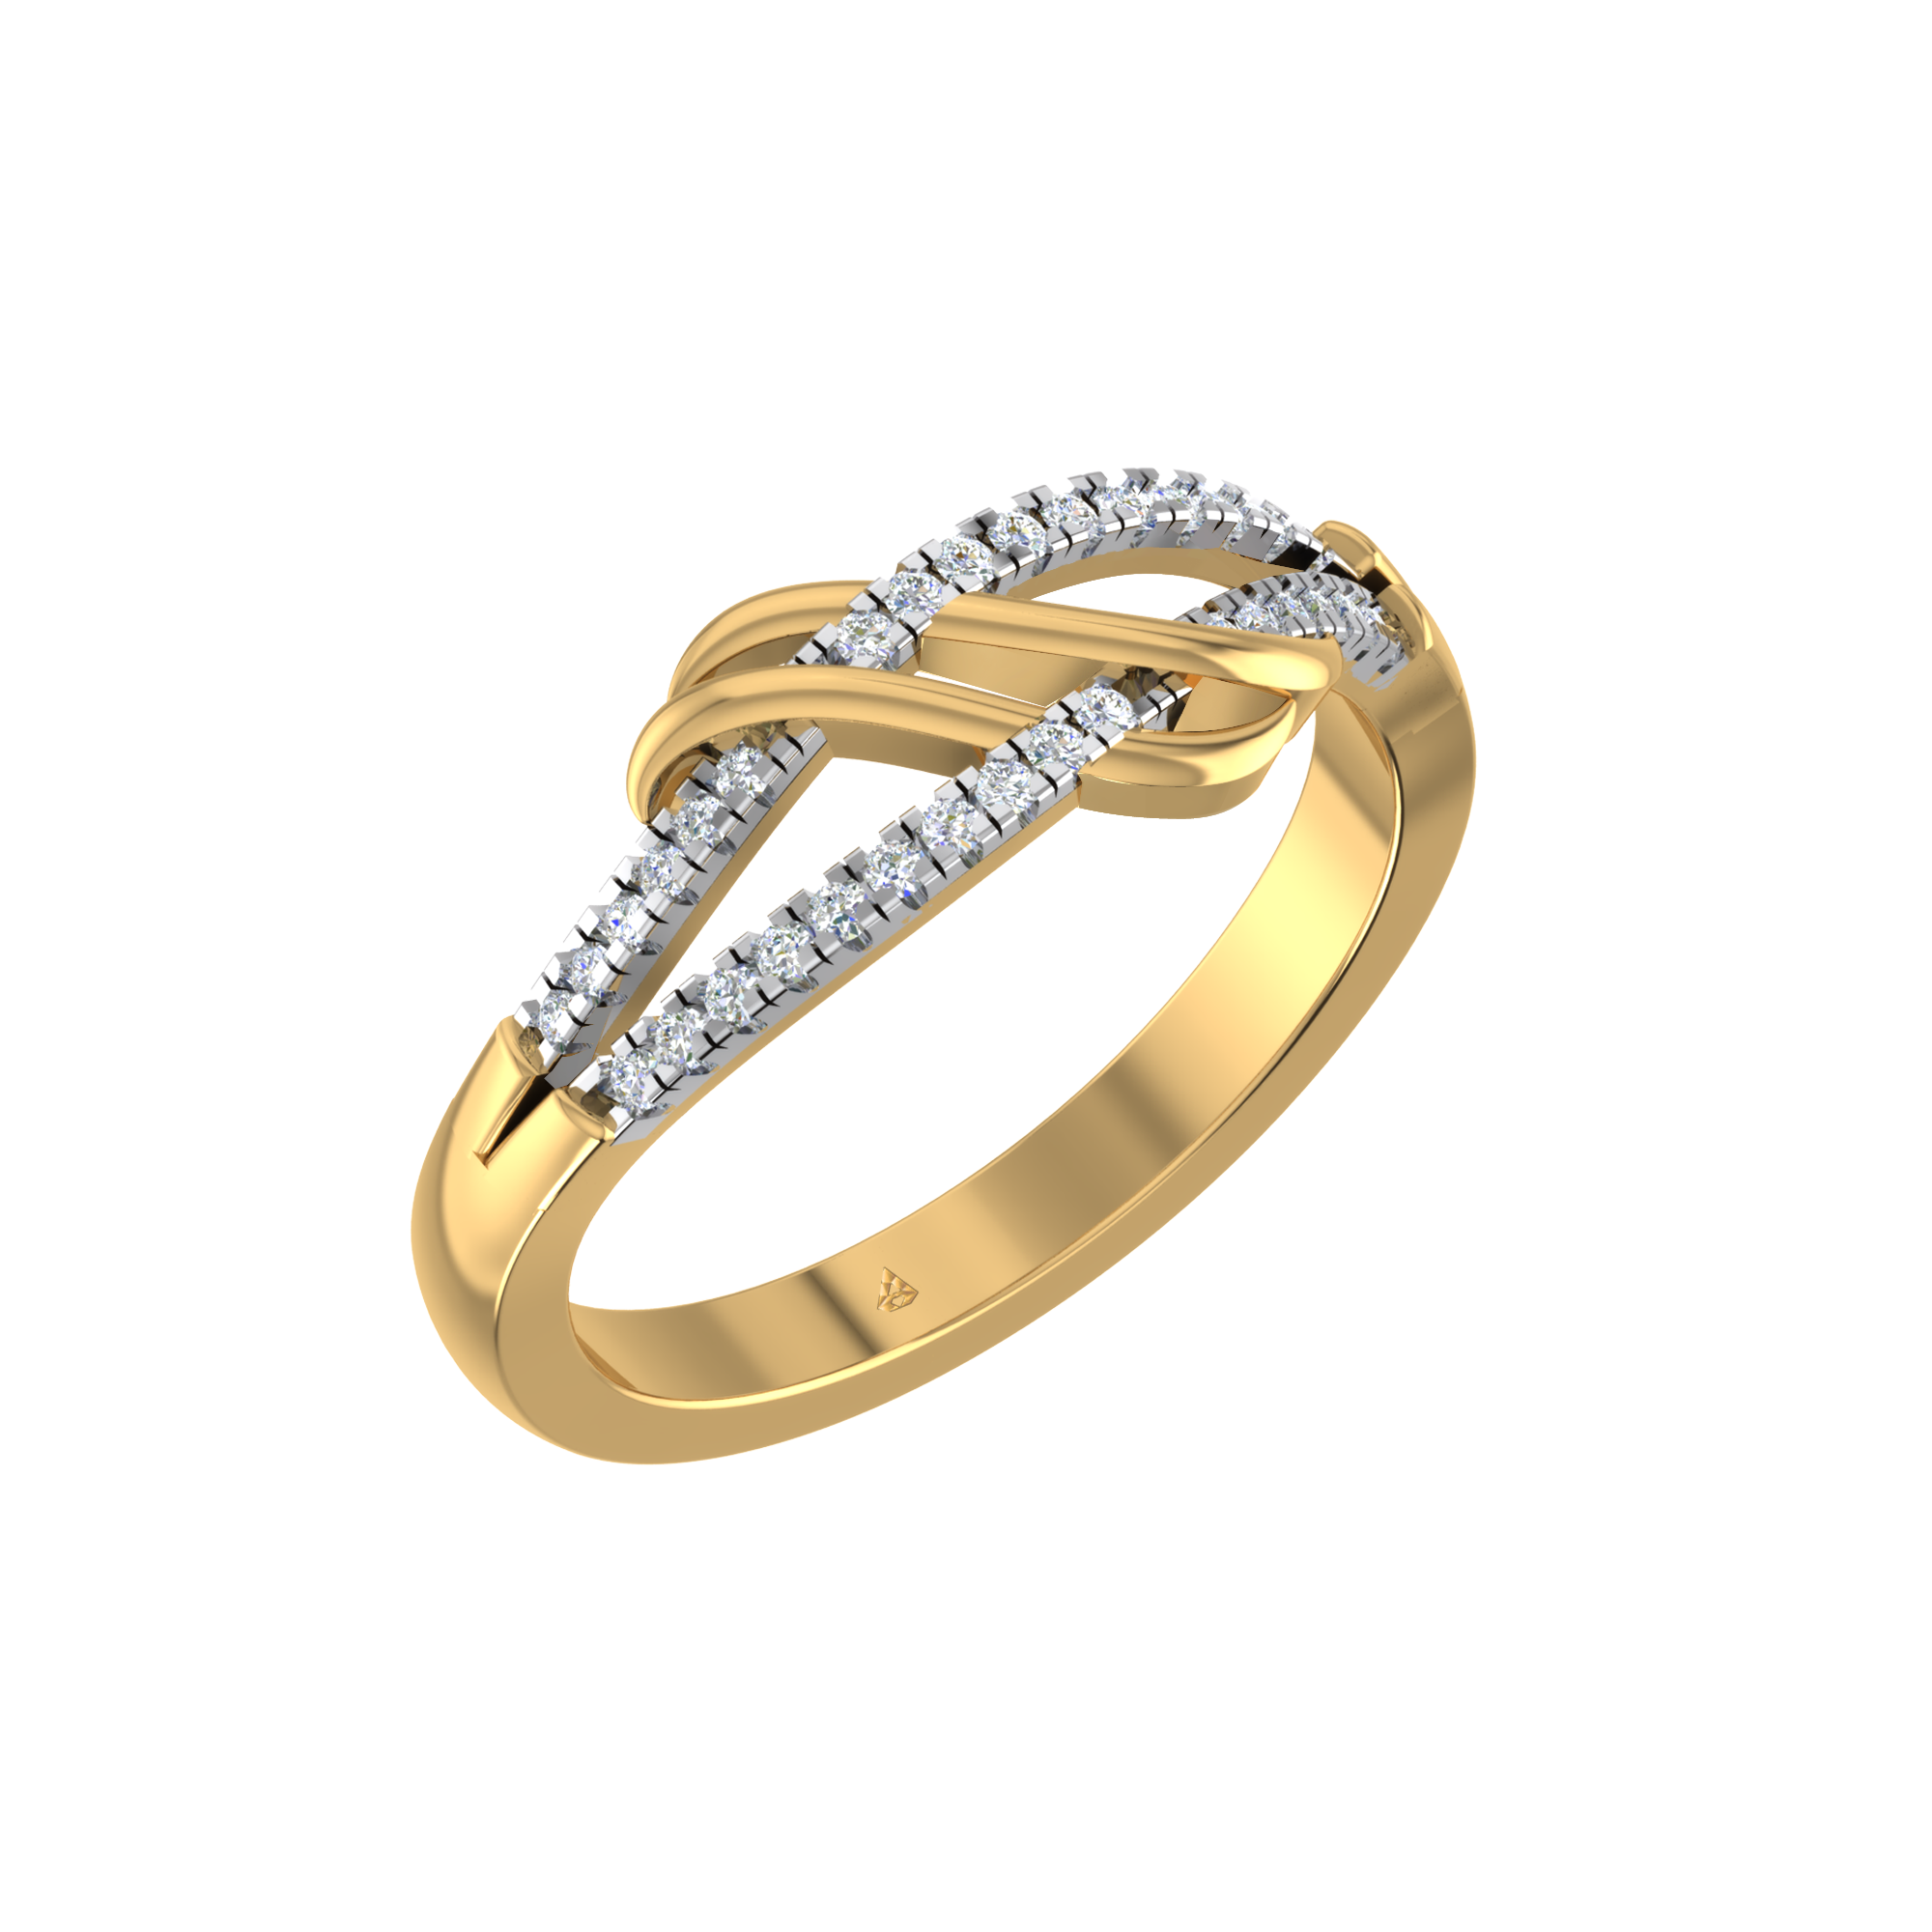 DISHIS 14k (585) White Gold Diamond Ring for Women : Amazon.in: Fashion